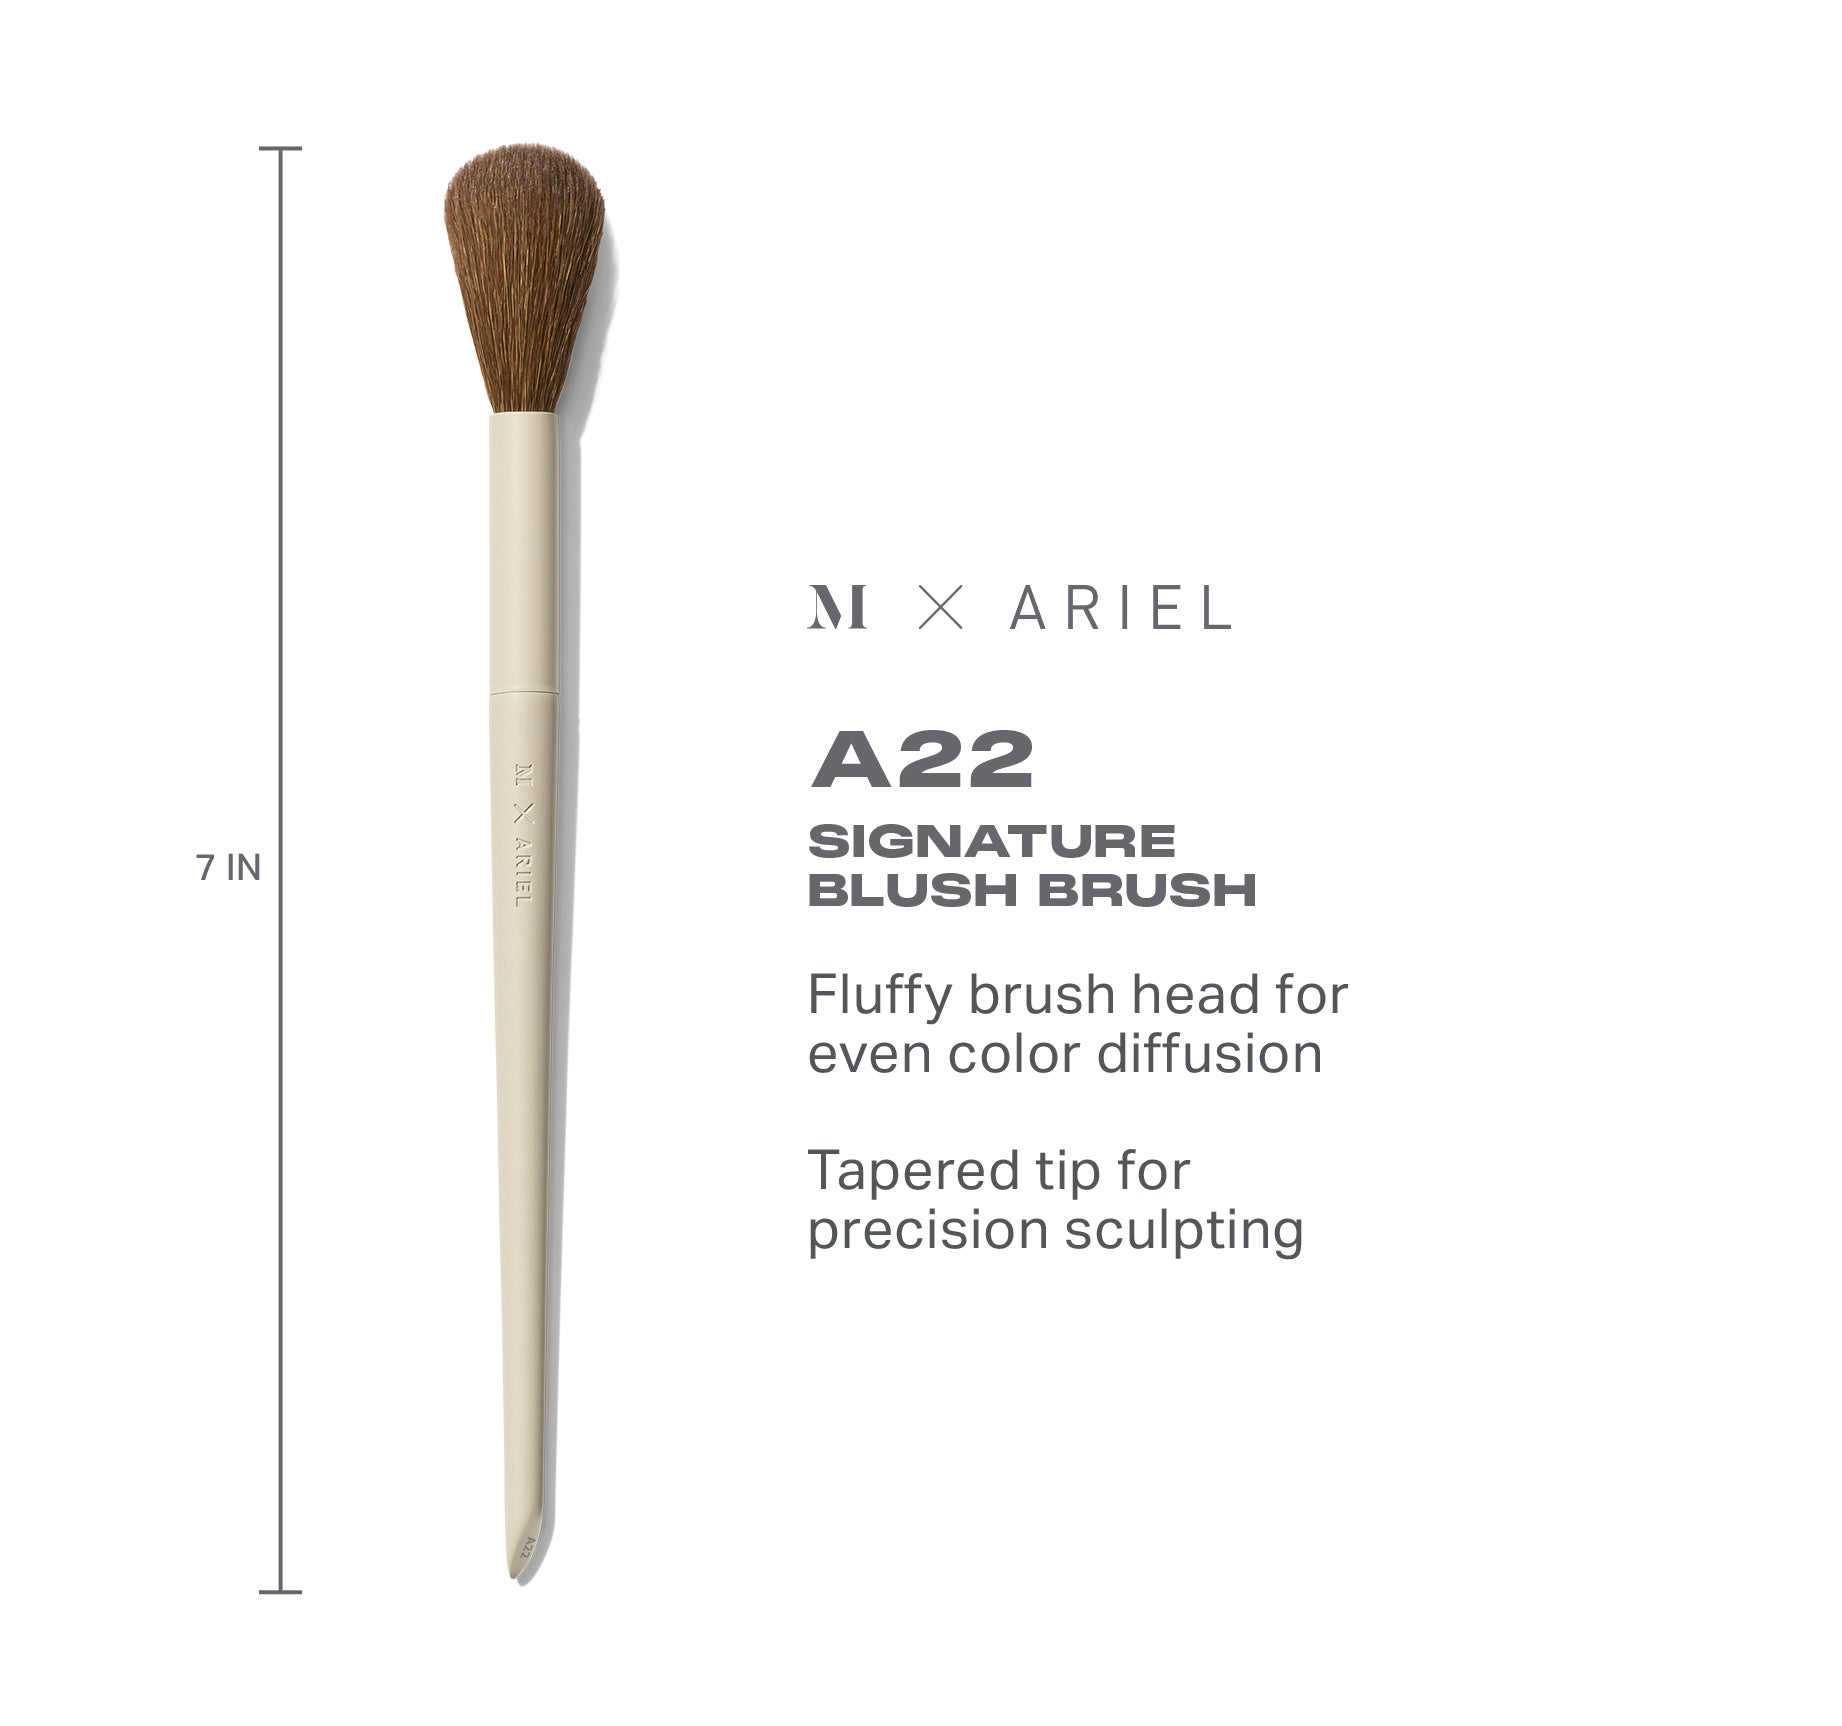 Morphe X Ariel A22 Signature Blush Brush - Image 4